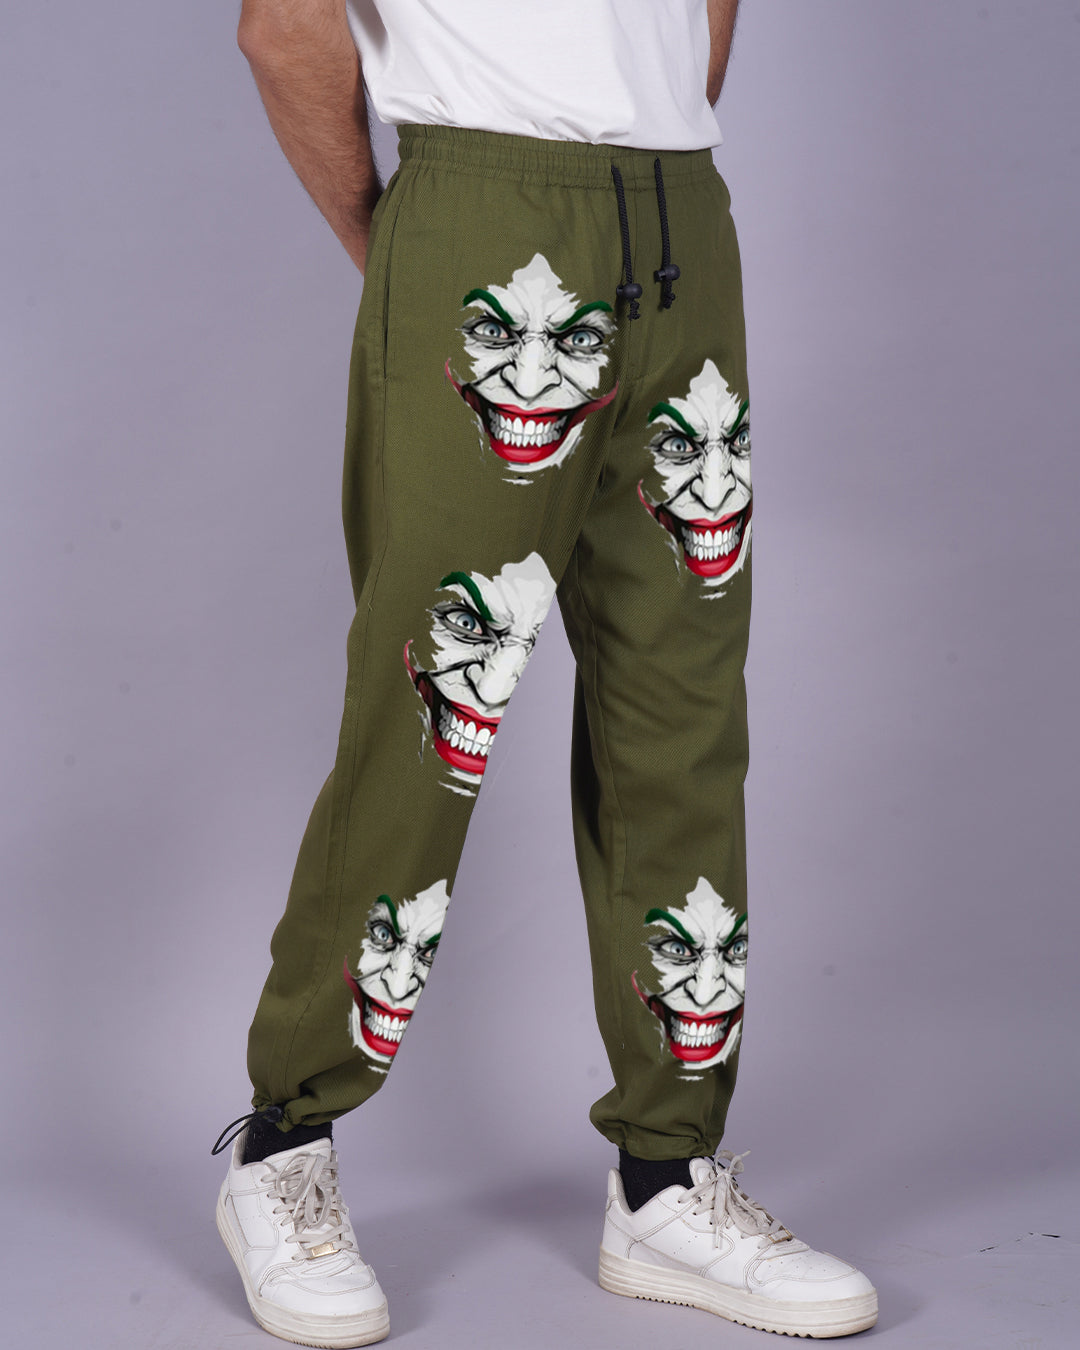 Men's Olive Cargo Adjustable Pants - Joker Print